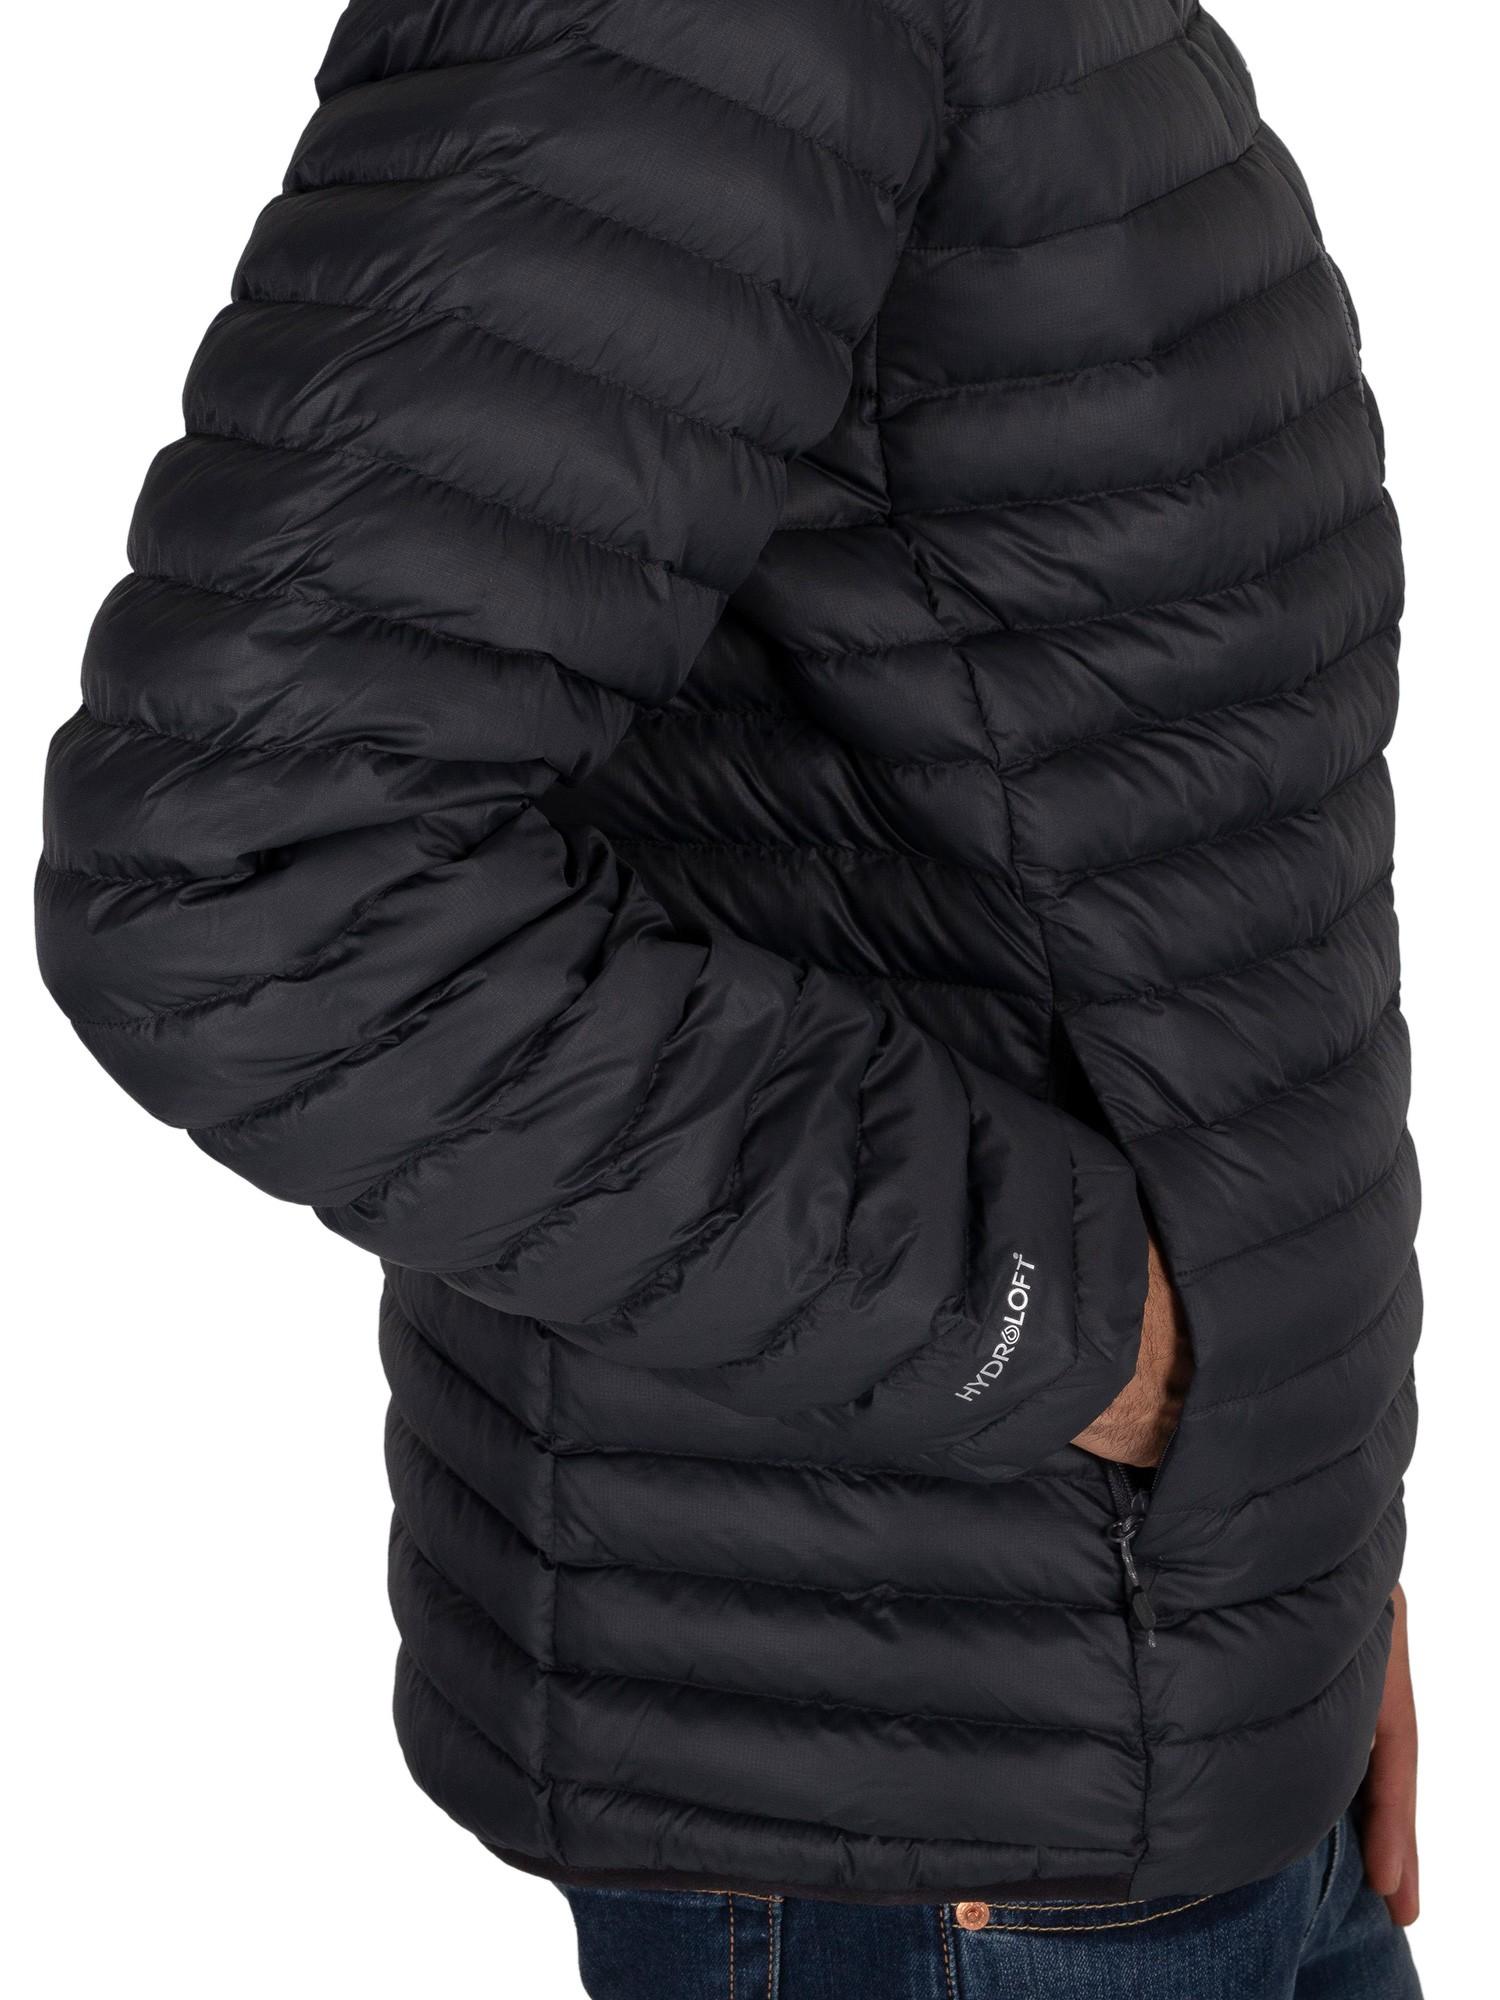 Berghaus Vaskye Puffer Jacket in Black/Black (Black) for Men | Lyst